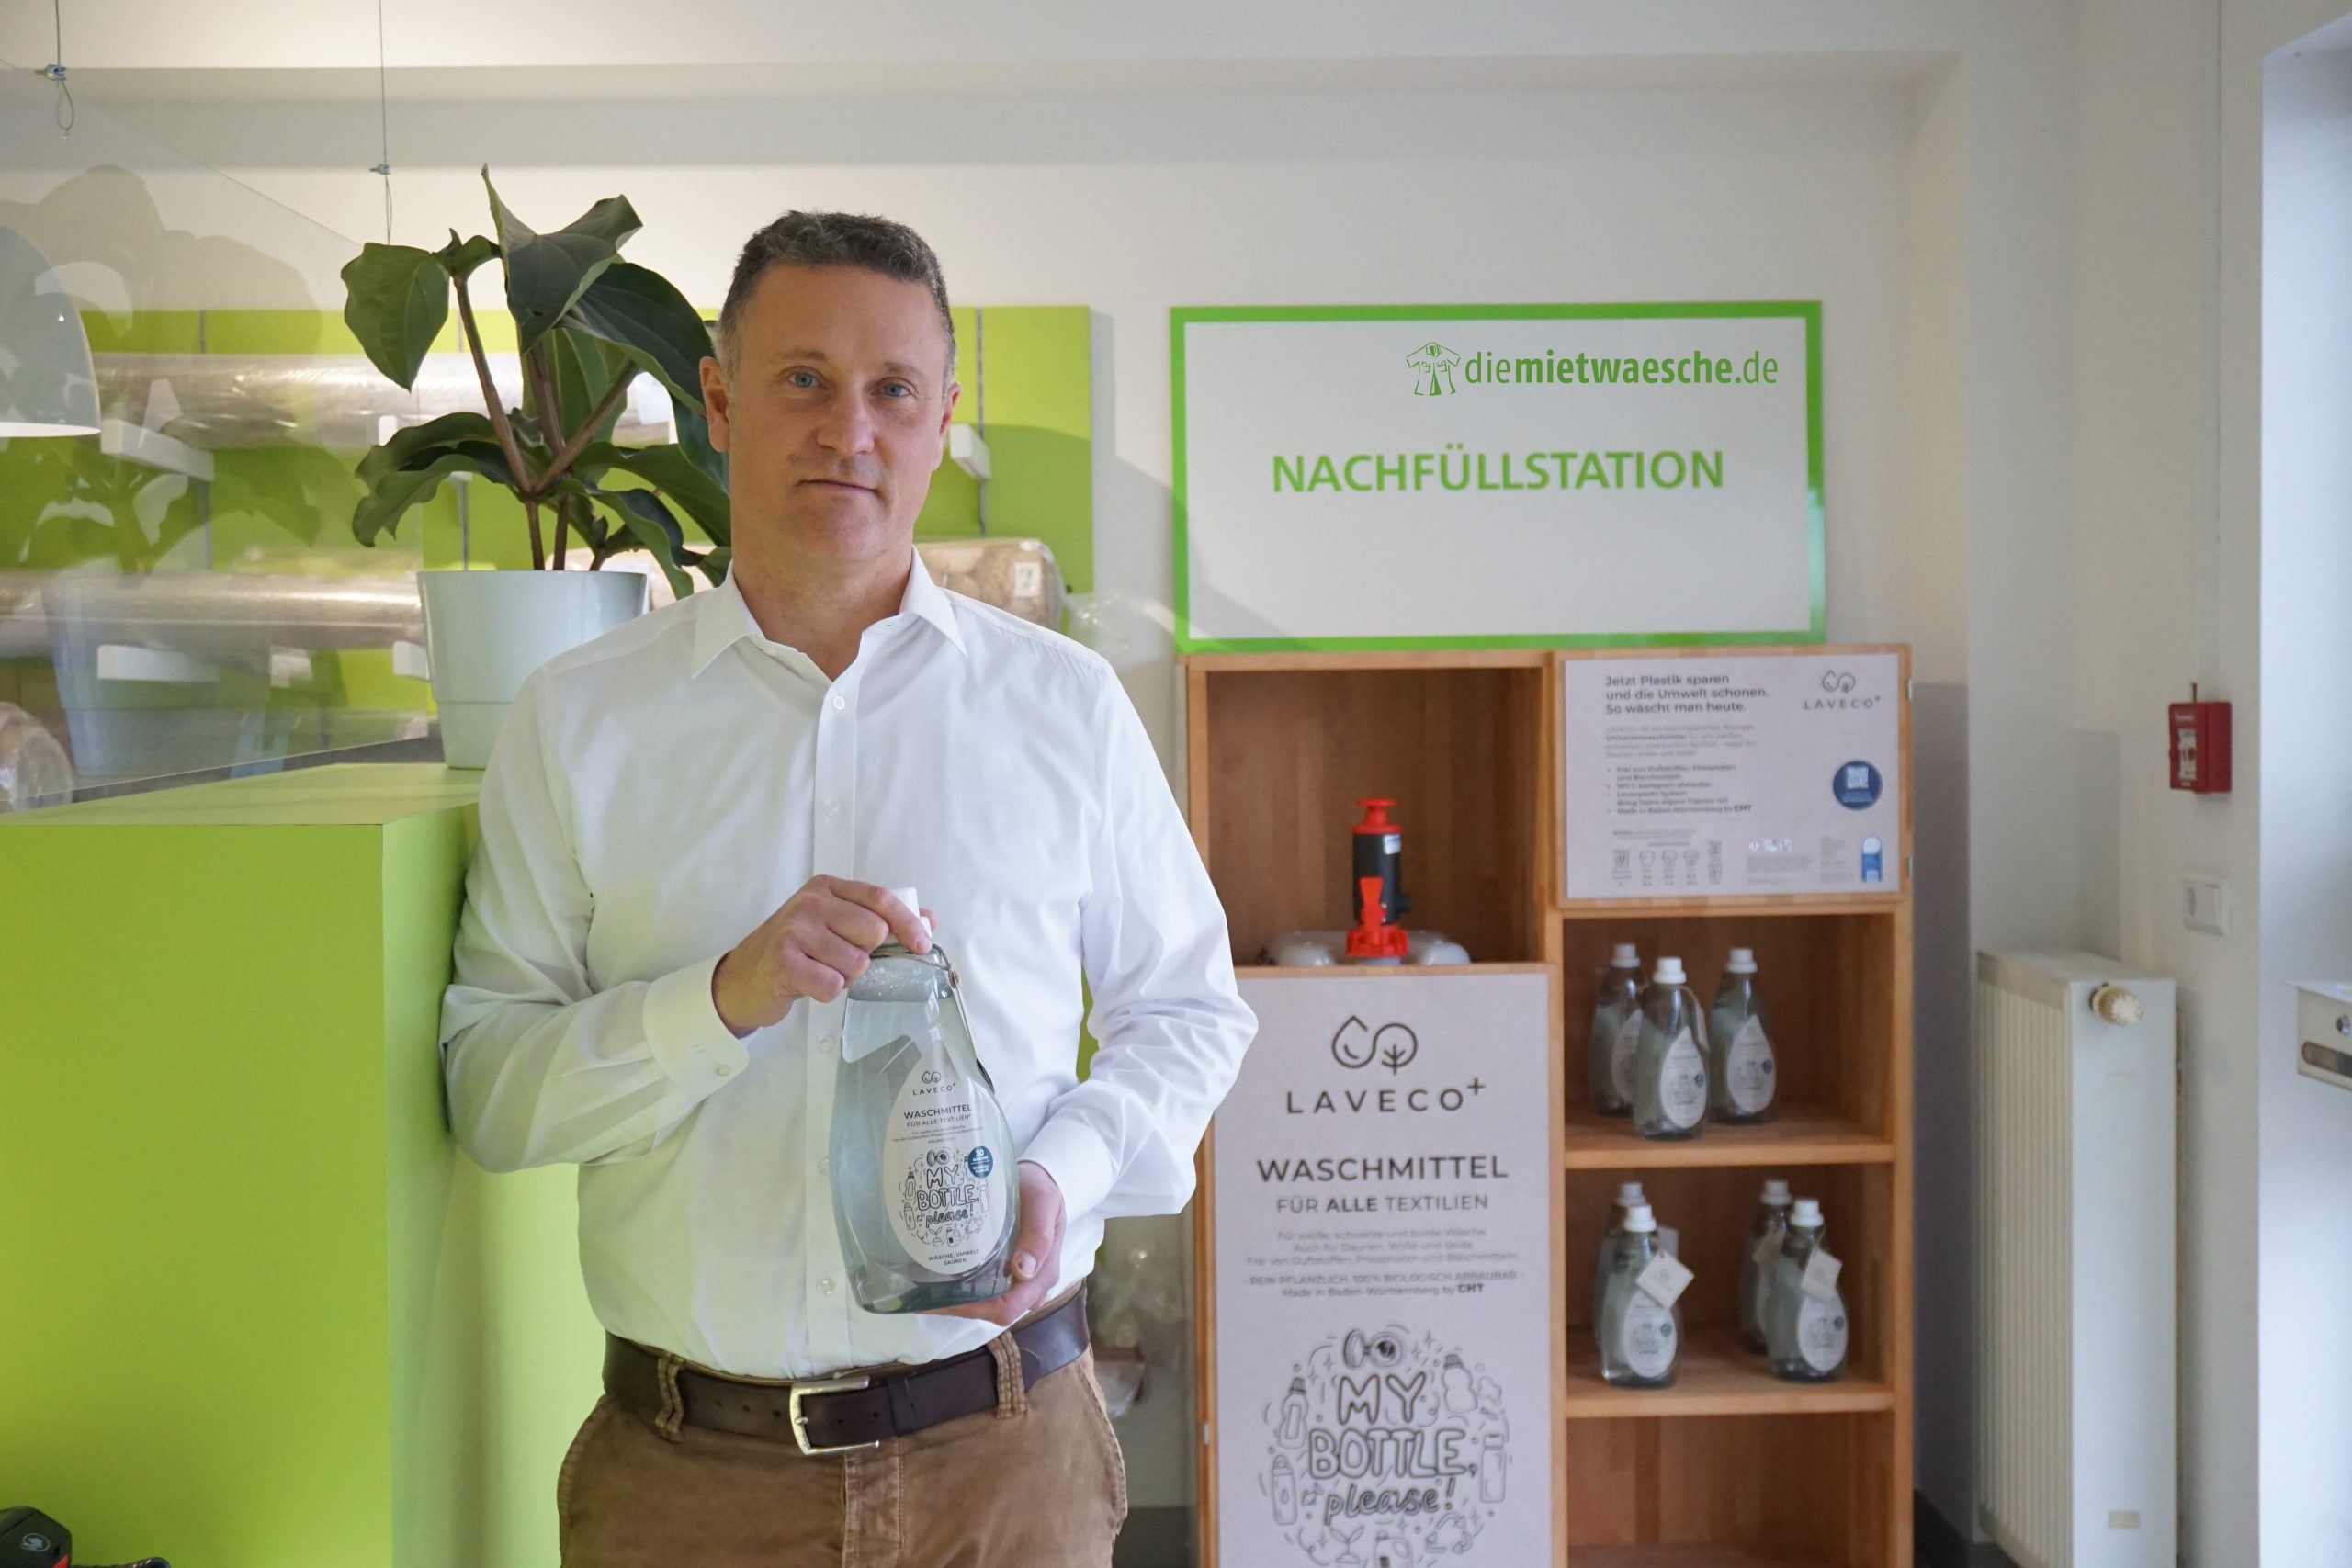 Henrik Rüss hält pflanzliches Waschmittel zum nachhaltigen Abfüllen von diemietwaesche.de